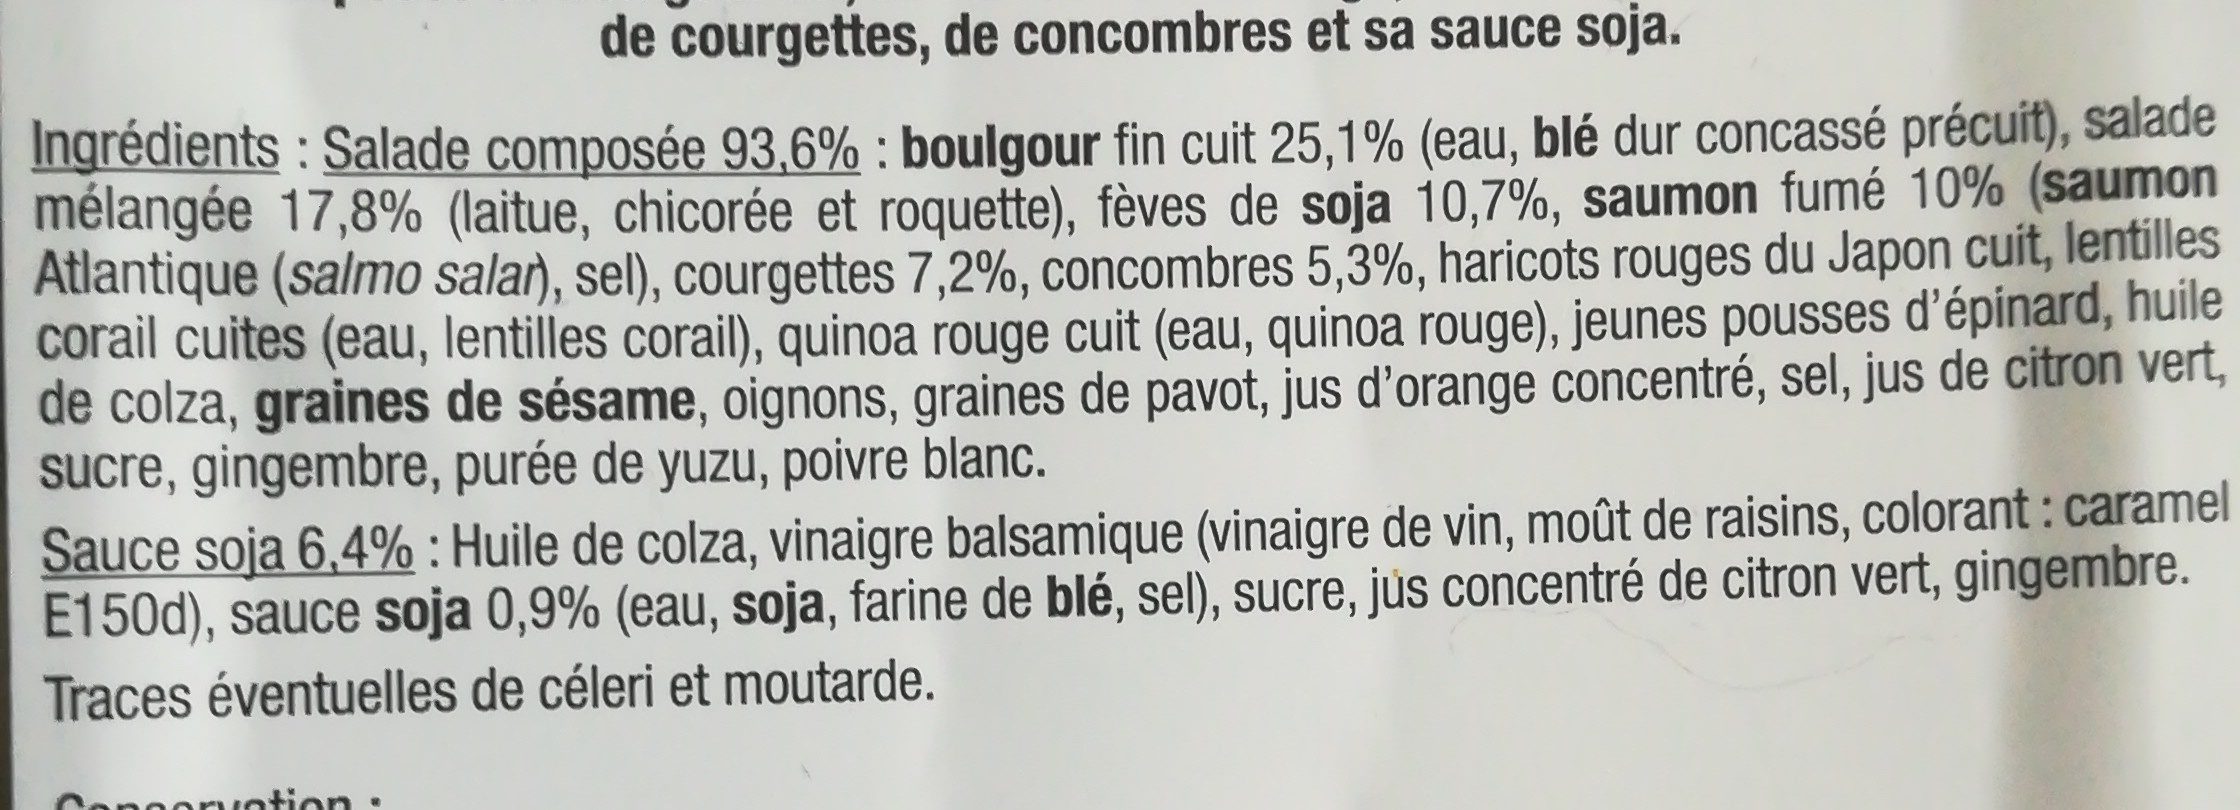 Salade Saumon fumé céréales - Ingredients - fr